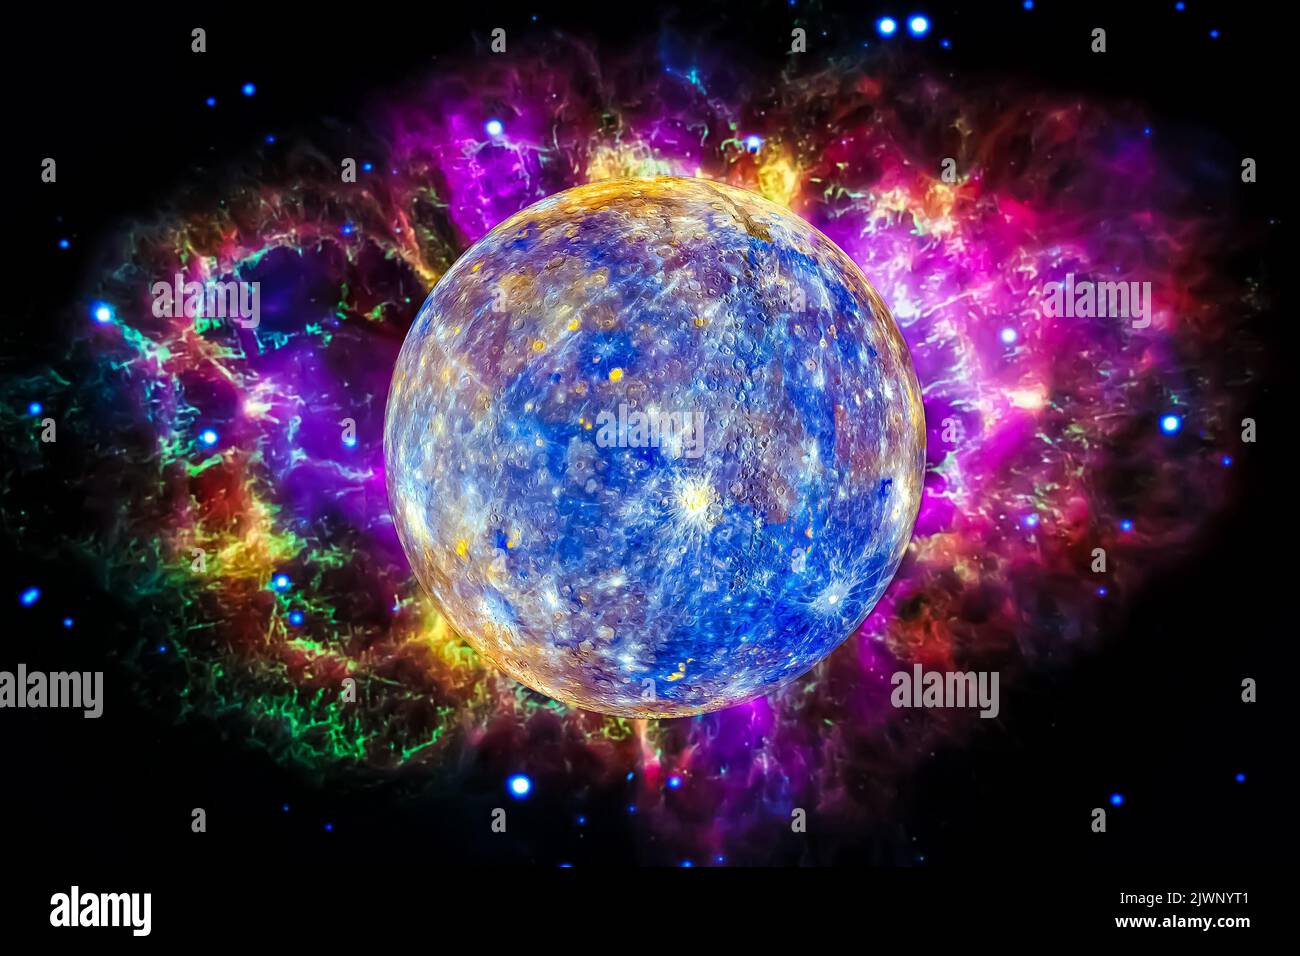 Pianeta al mercurio con nebulosa colorata. Sfondo dello spazio. Elementi dell'immagine fornita dalla NASA. Foto Stock